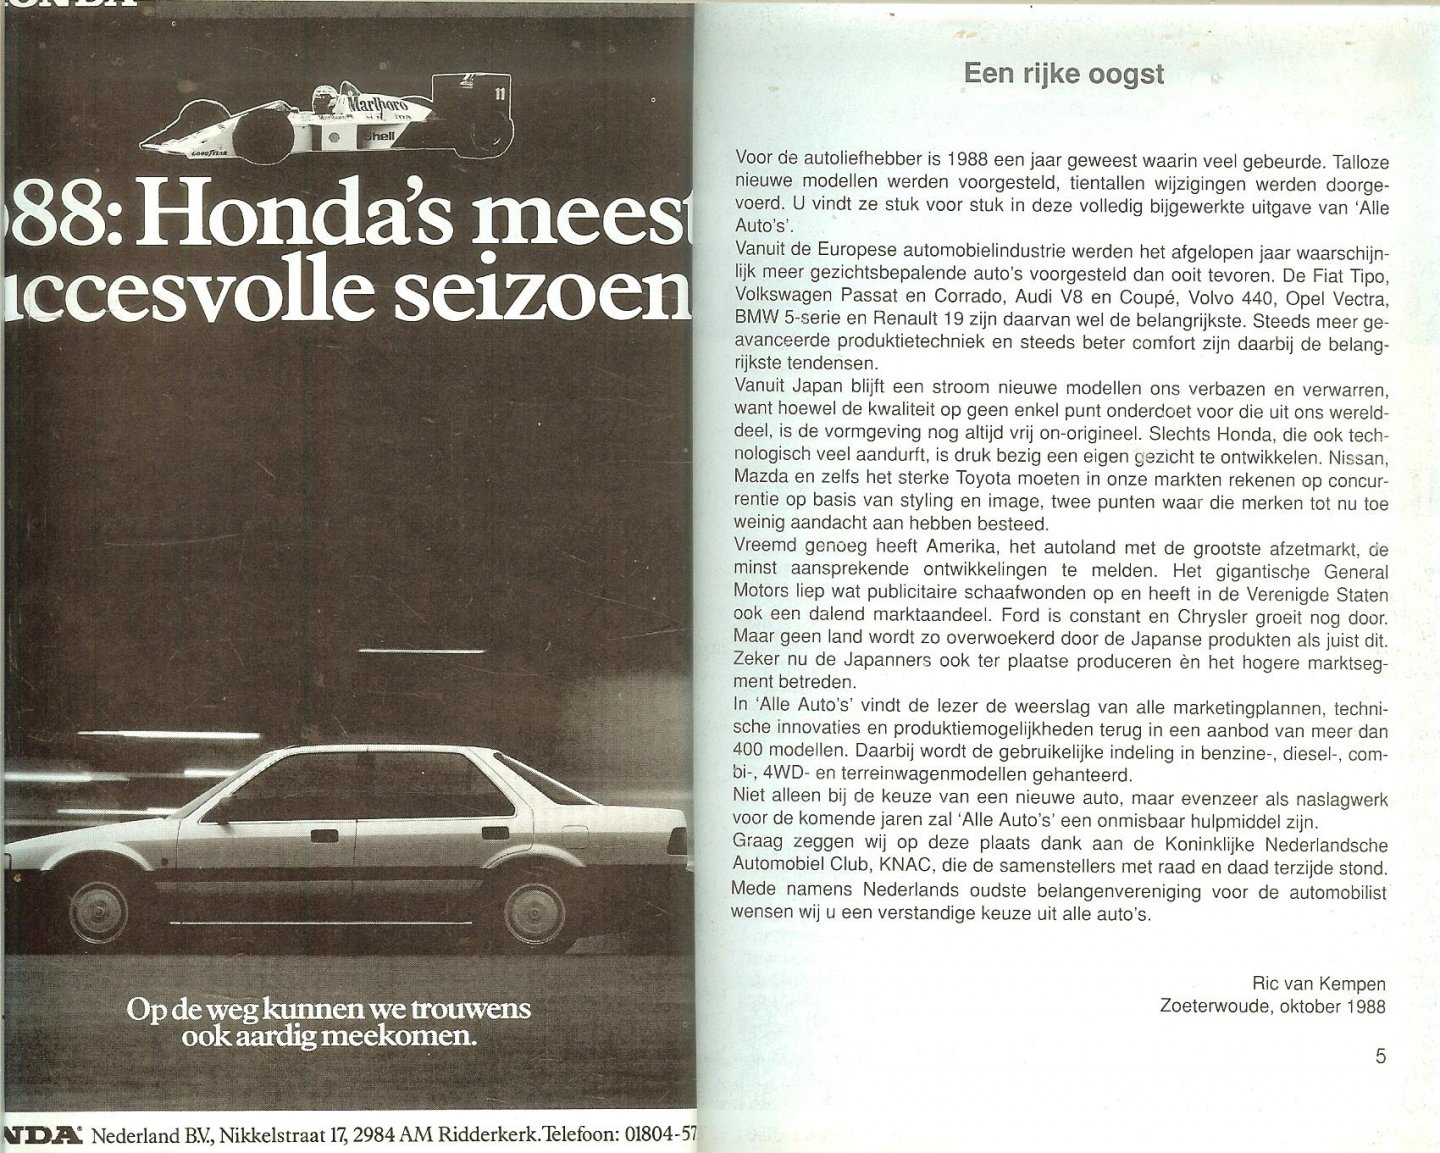 Kempen Ric van - Alle auto's 1989  Meer dan 400 modellen overzichtelijk gerangschikt, benzine, diesel, combi, 4 WD, terrein, prijslijst, kentekens, wegenbelasting